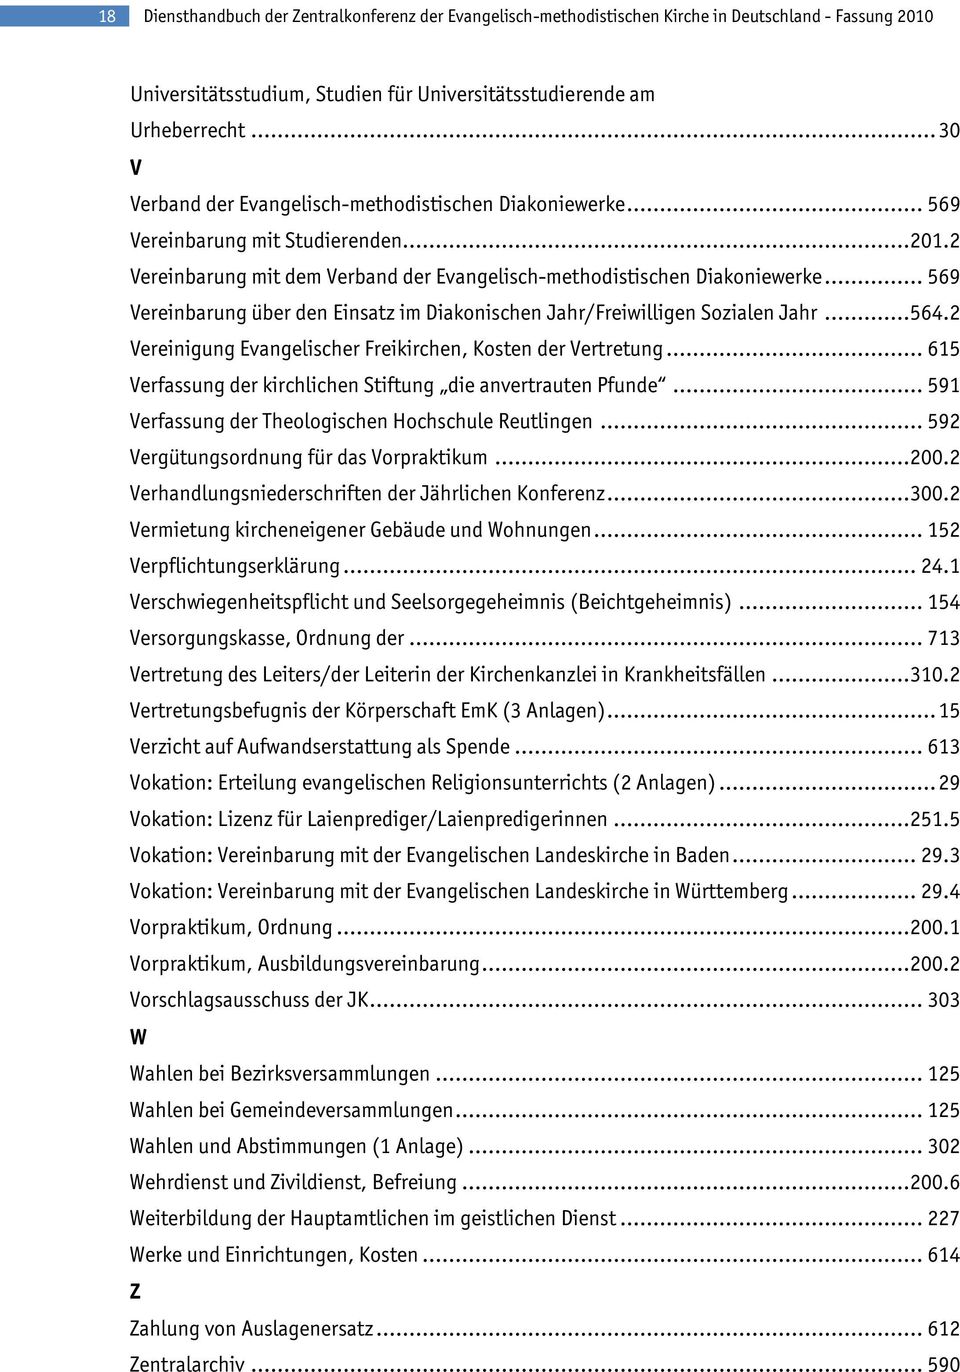 .. 569 Vereinbarung über den Einsatz im Diakonischen Jahr/Freiwilligen Sozialen Jahr... 564.2 Vereinigung Evangelischer Freikirchen, Kosten der Vertretung.